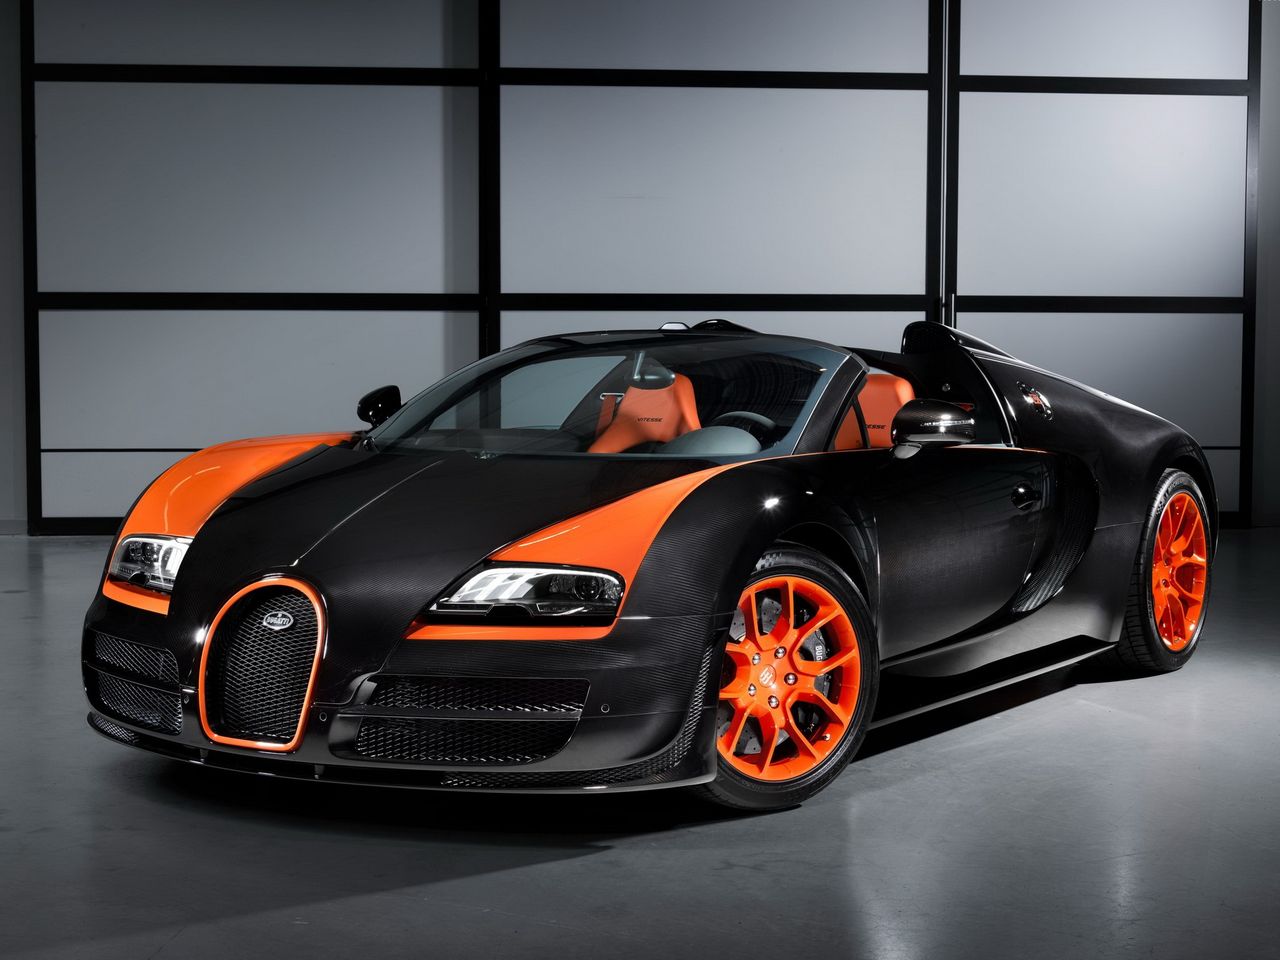 W 2013 roku Bugatti stworzyło Veyrona w barwach czarno-pomarańczowych. Te same kolory co w rekordowym Super Sporcie tym razem trafiły na Vitesse'a. Powstało 8 egzemplarzy tego Grand Sporta. Każdy z nich sprzedano za 1,99 mln euro.